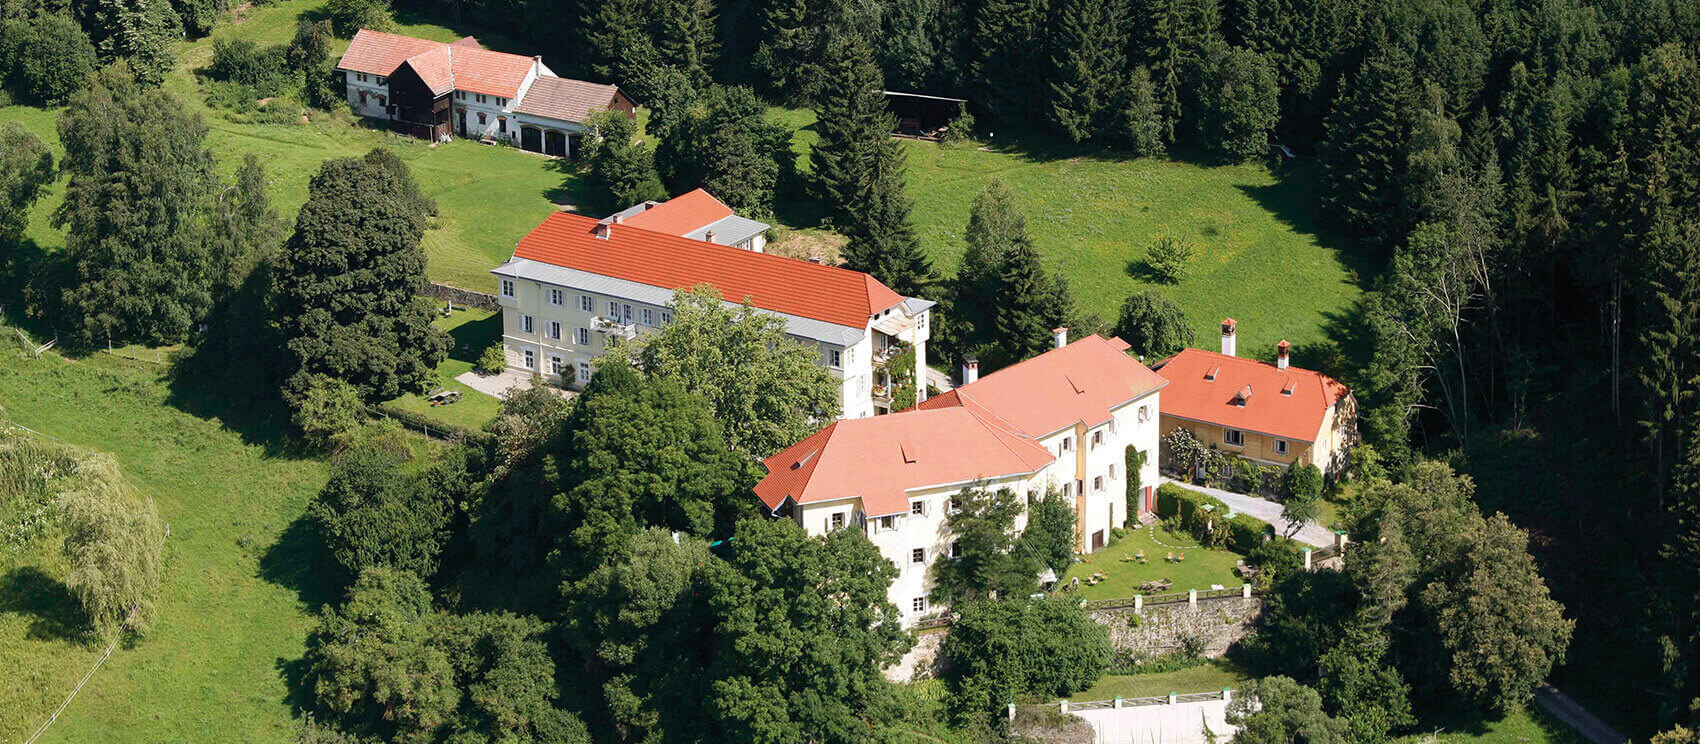 Blick auf das Pichlschloss mit den Schlossgebäuden und rundherum Wiesen und Wald